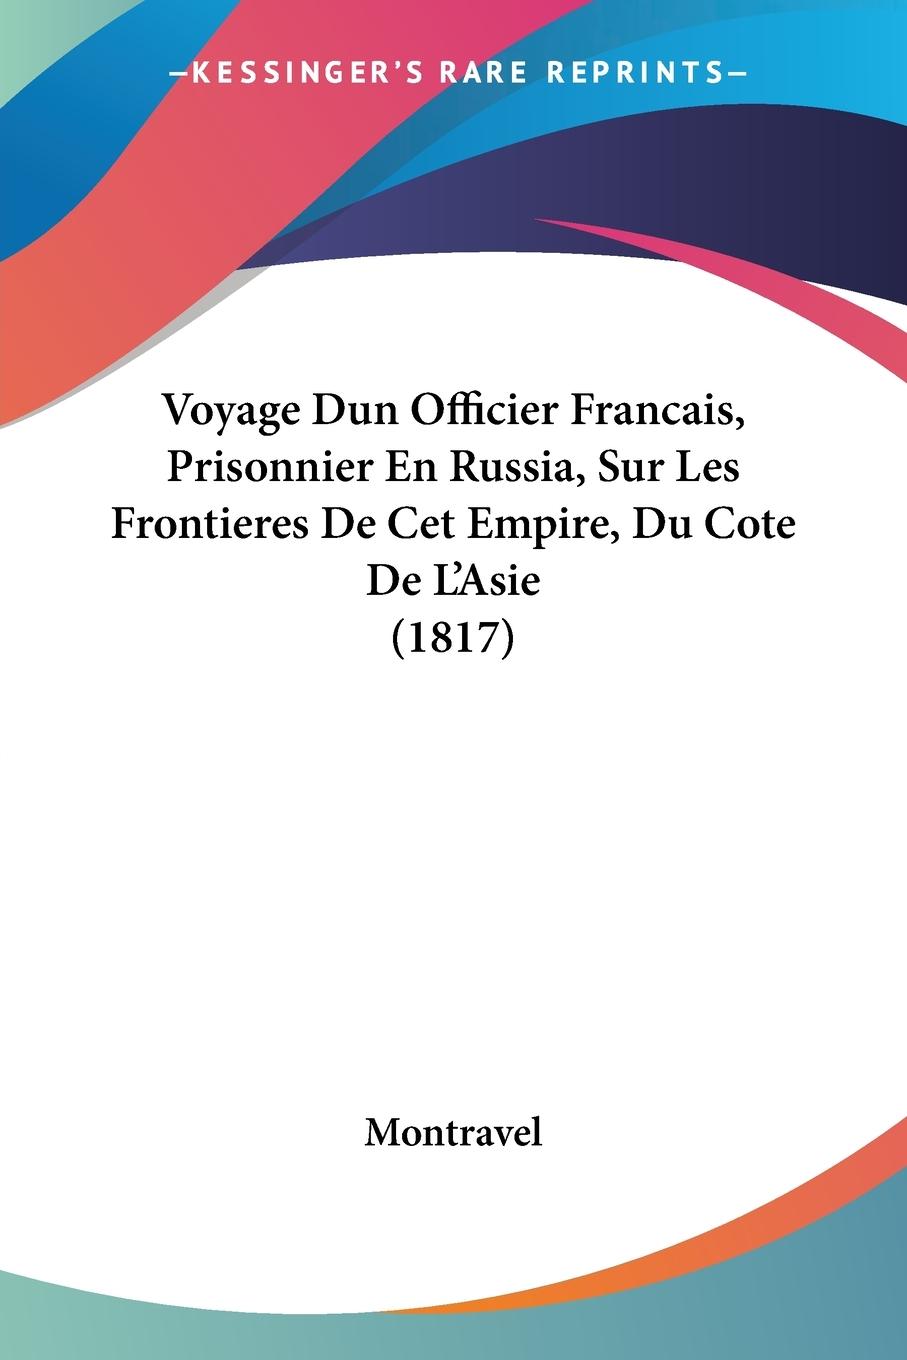 Voyage Dun Officier Francais, Prisonnier En Russia, Sur Les Frontieres De Cet Empire, Du Cote De L Asie (1817) - Montravel